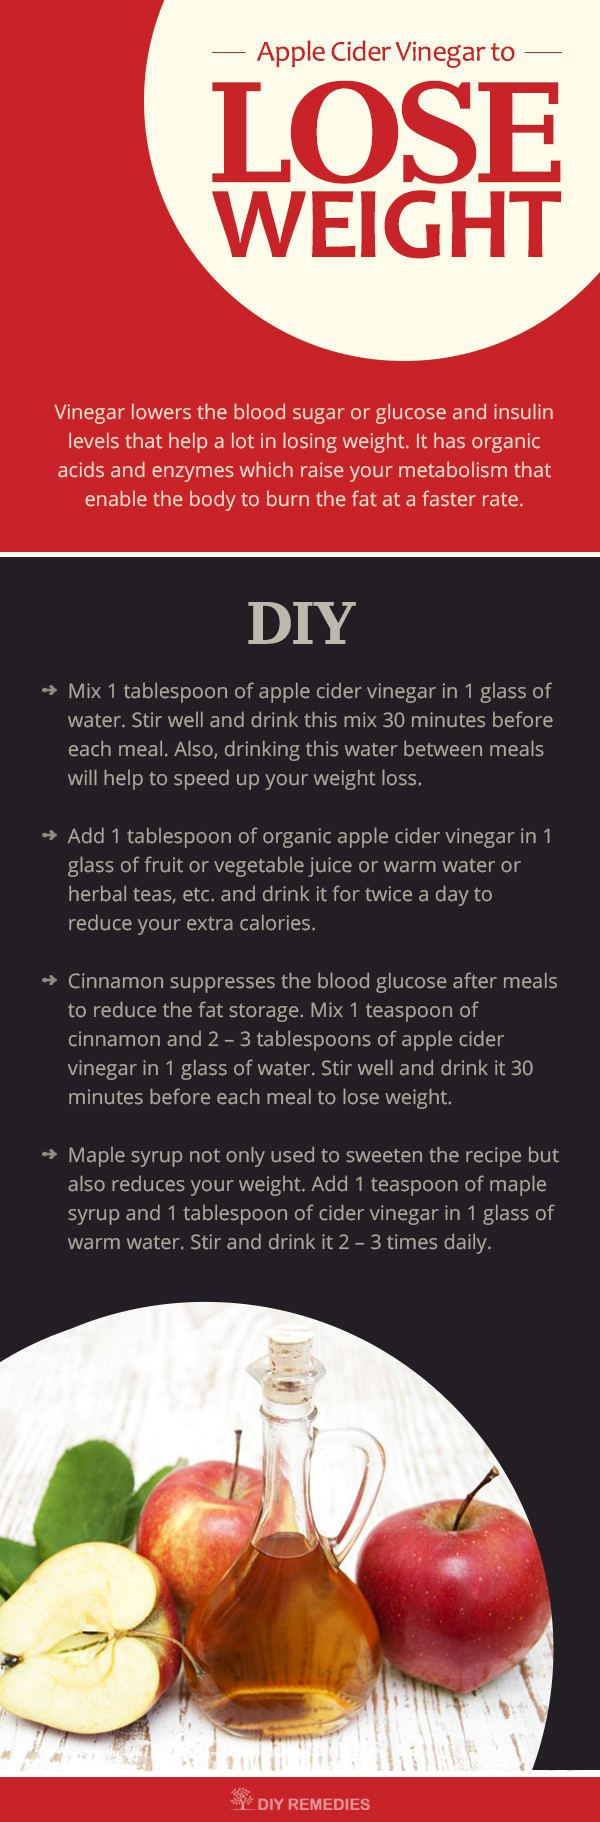 Apple Cider Vinegar Weight Loss Recipe
 Apple Cider Vinegar For Weight Loss